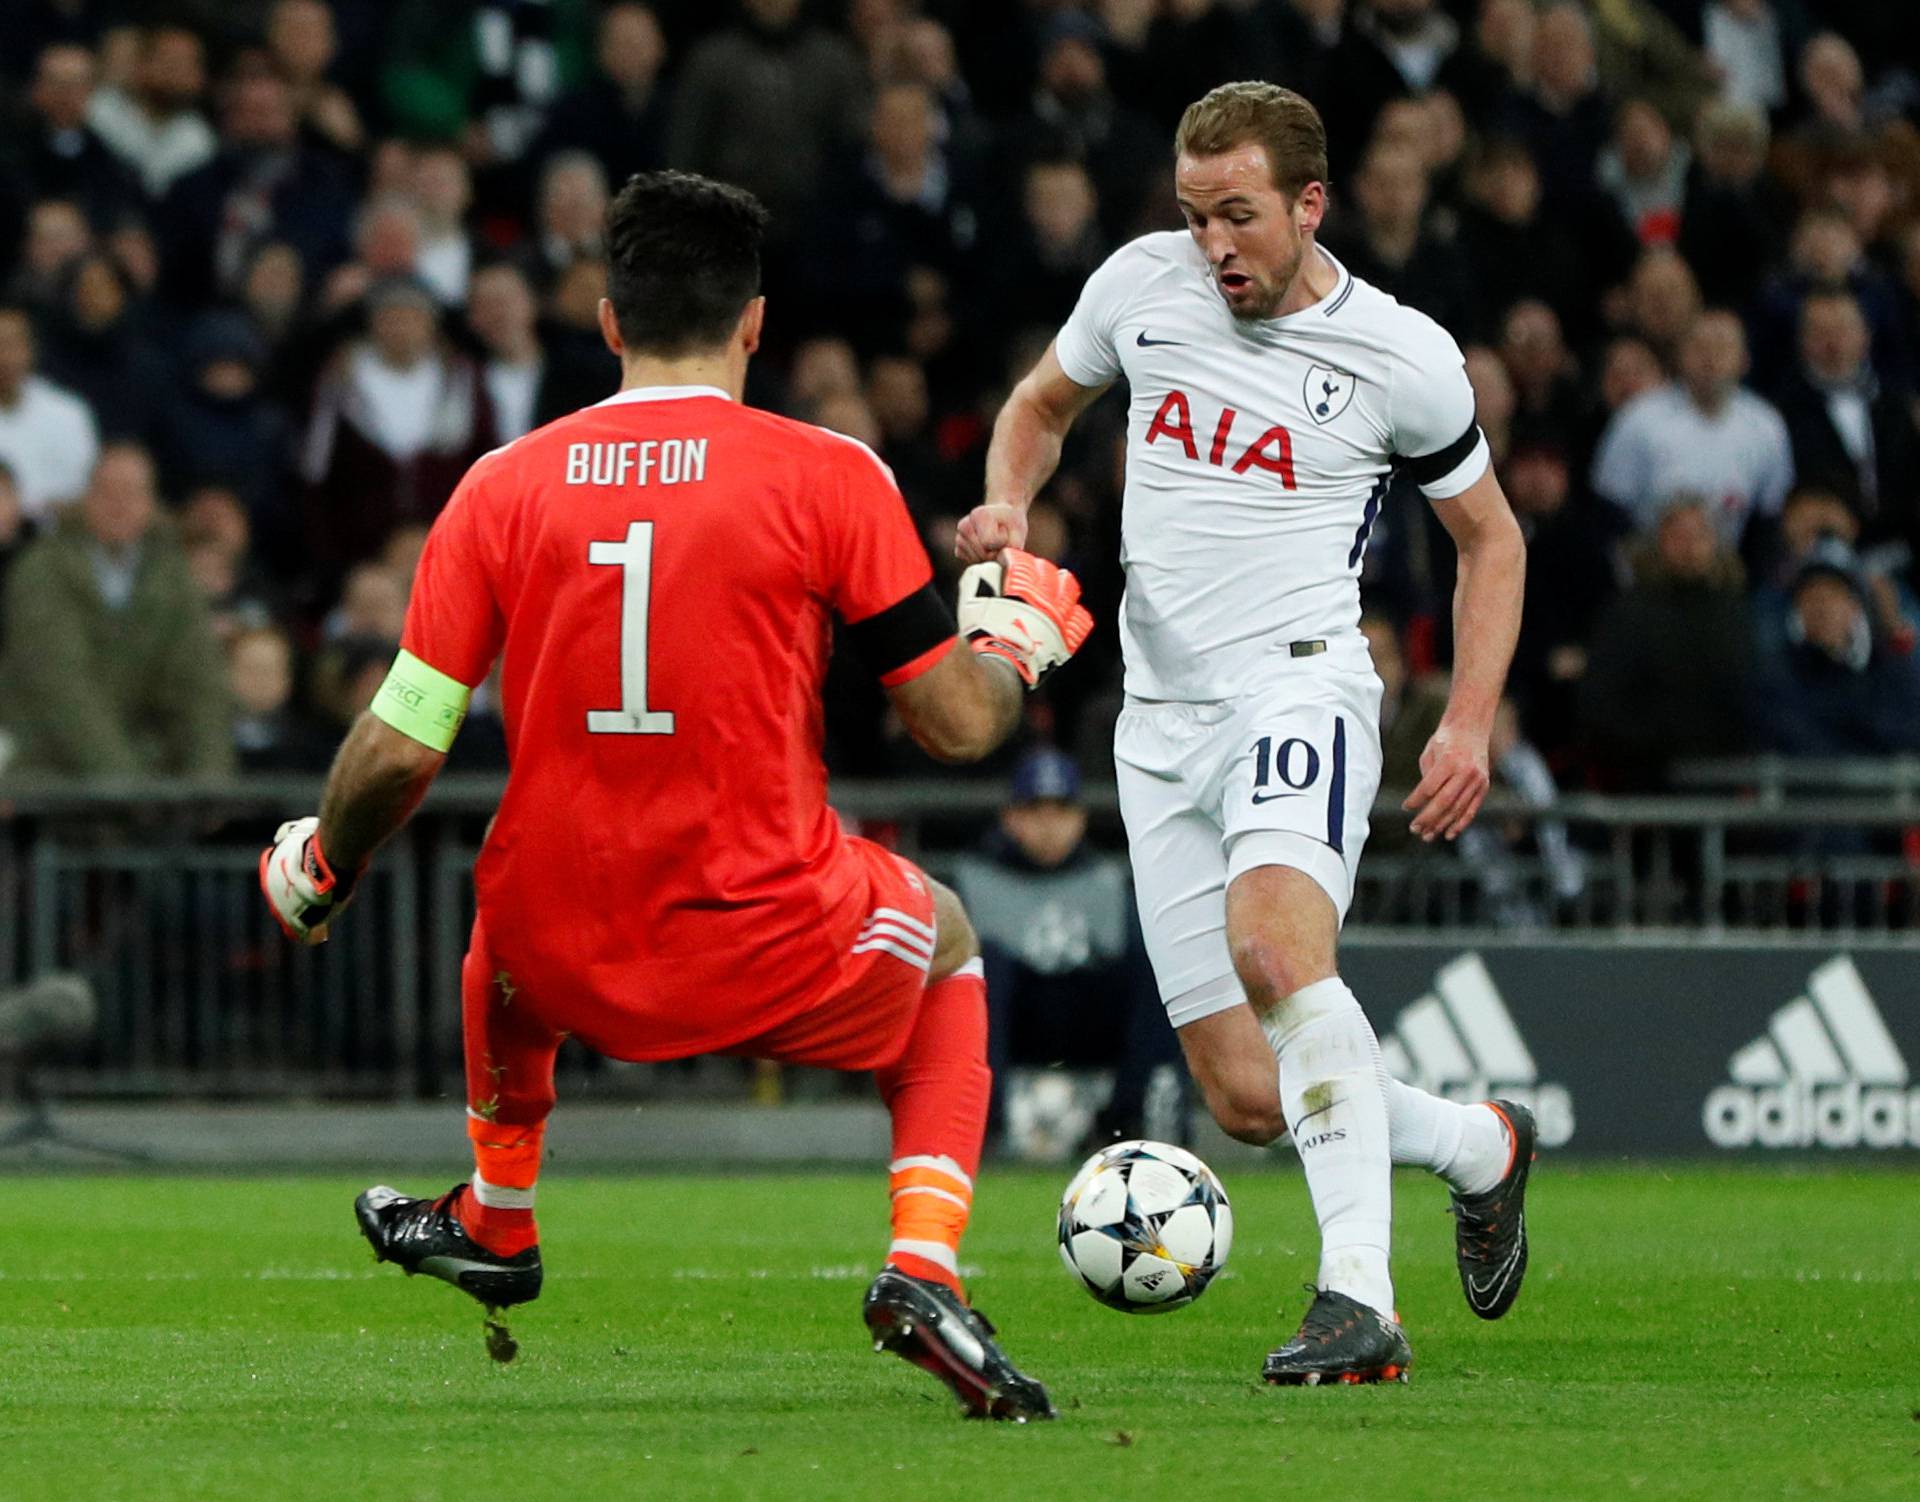 Champions League Round of 16 Second Leg - Tottenham Hotspur vs Juventus